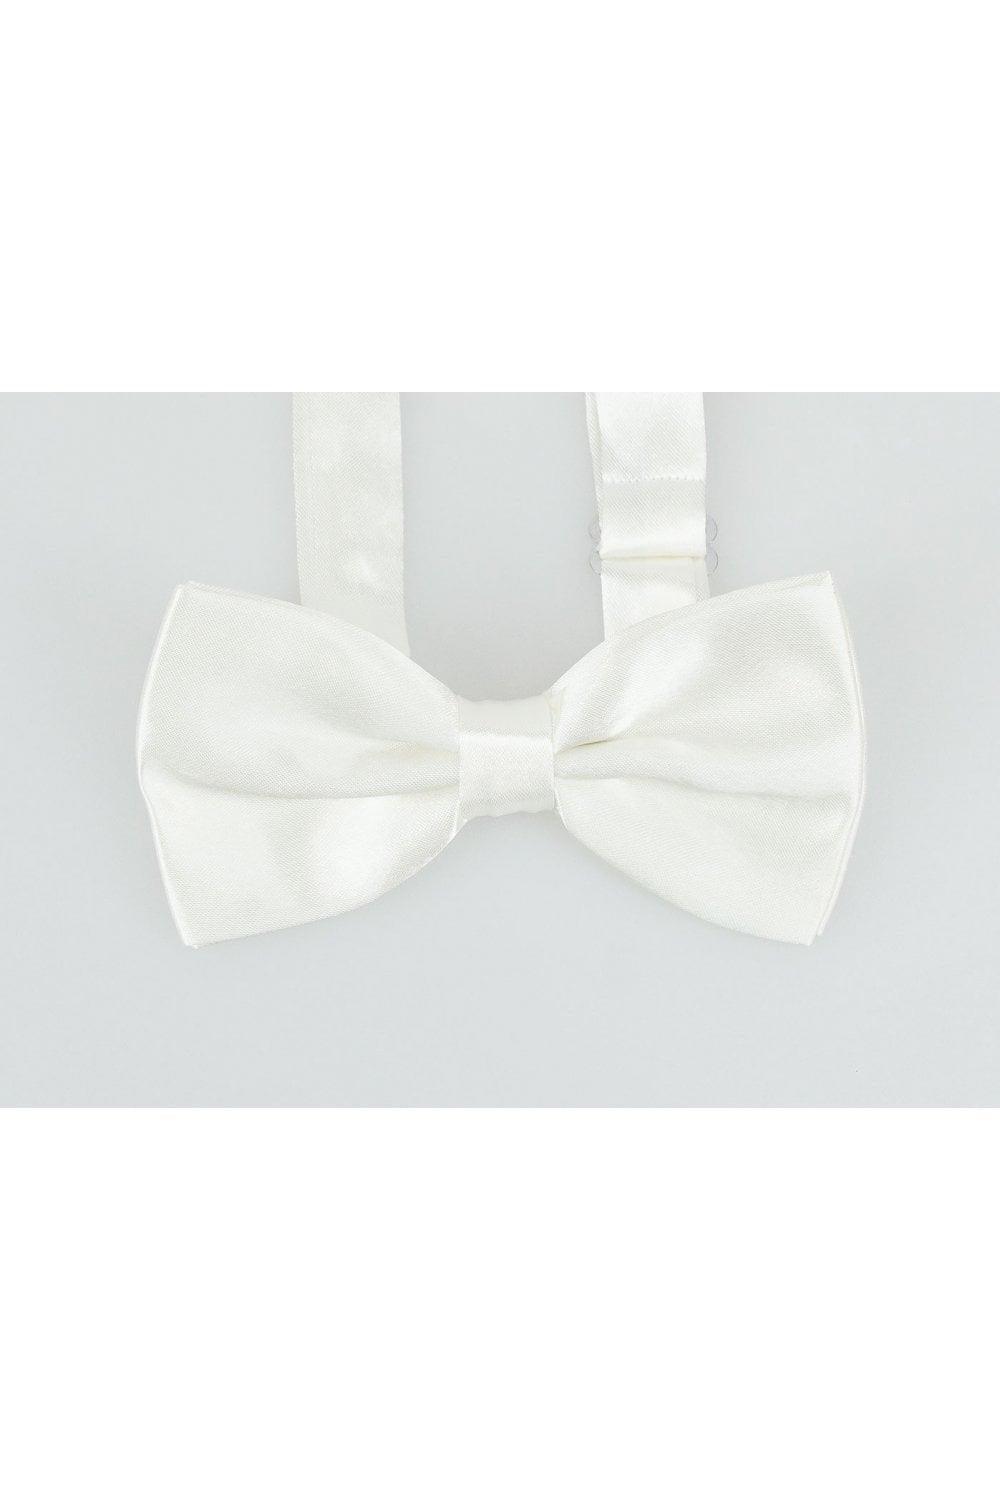 Satin white bow tie set front